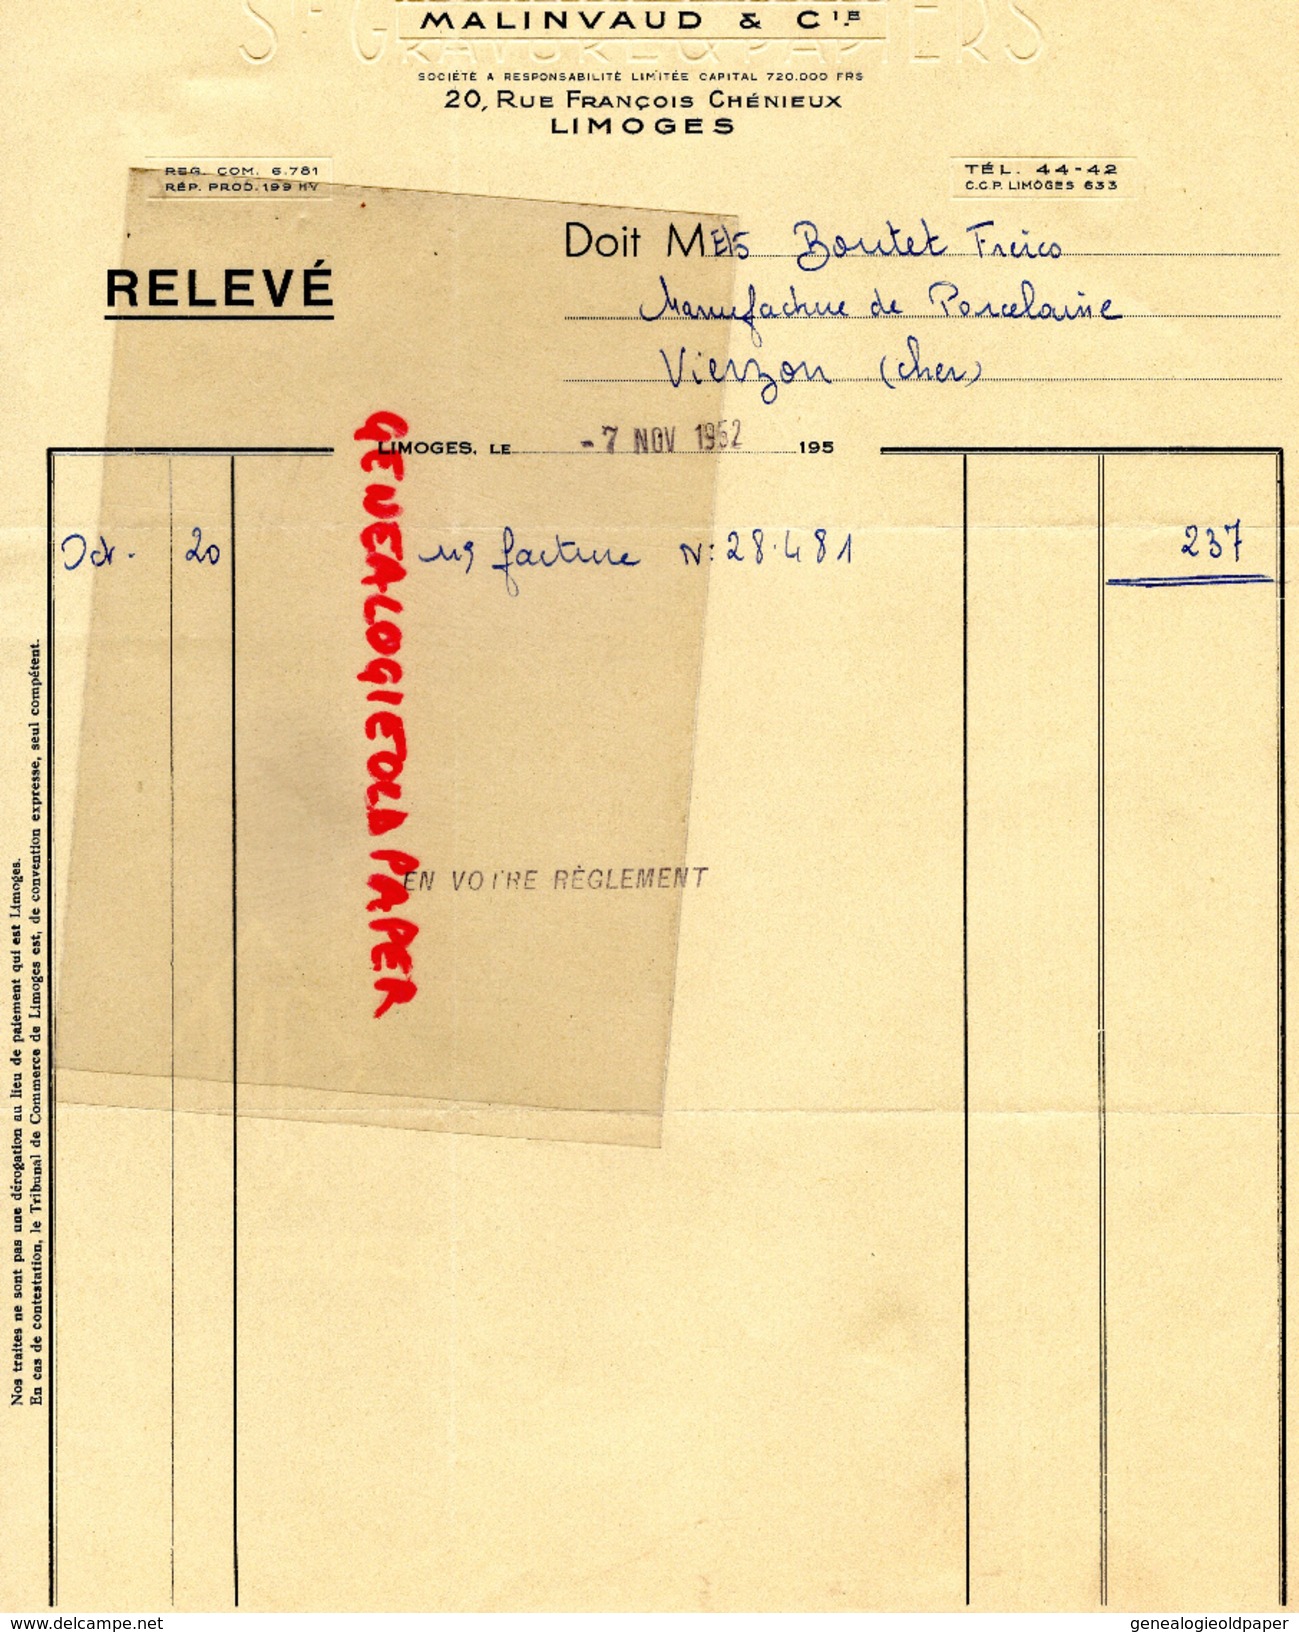 87 - LIMOGES - FACTURE MALINVAUD - IMPRIMERIE GRAVURE -20 RUE FRANCOIS CHENIEUX-1952 - Imprenta & Papelería